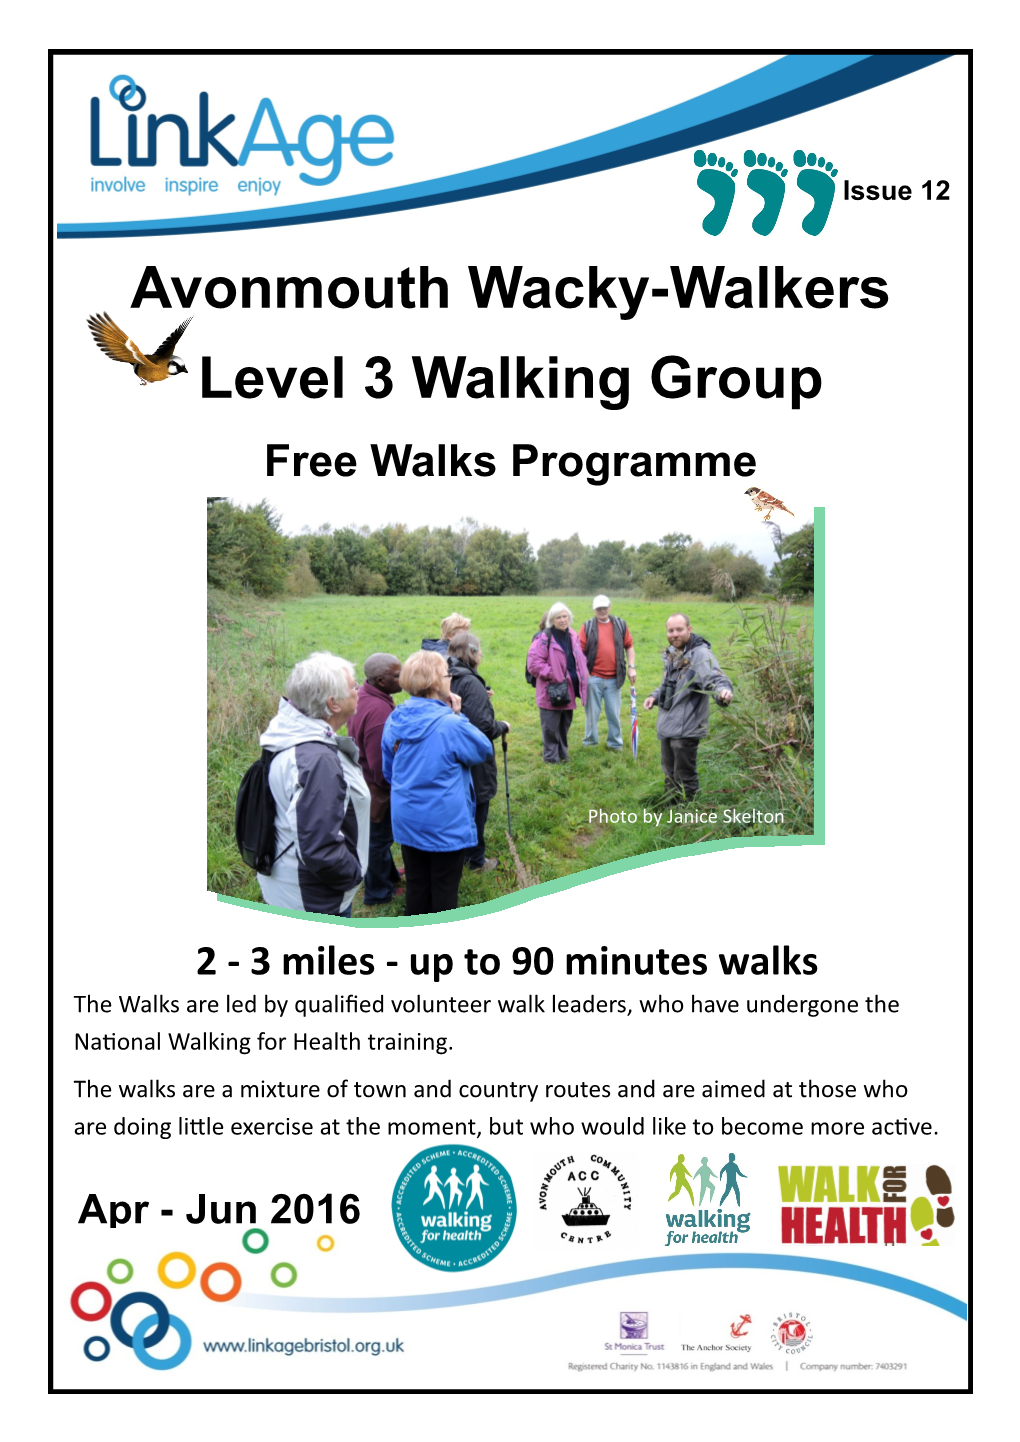 Avonmouth Wacky-Walkers Level 3 Walking Group Free Walks Programme